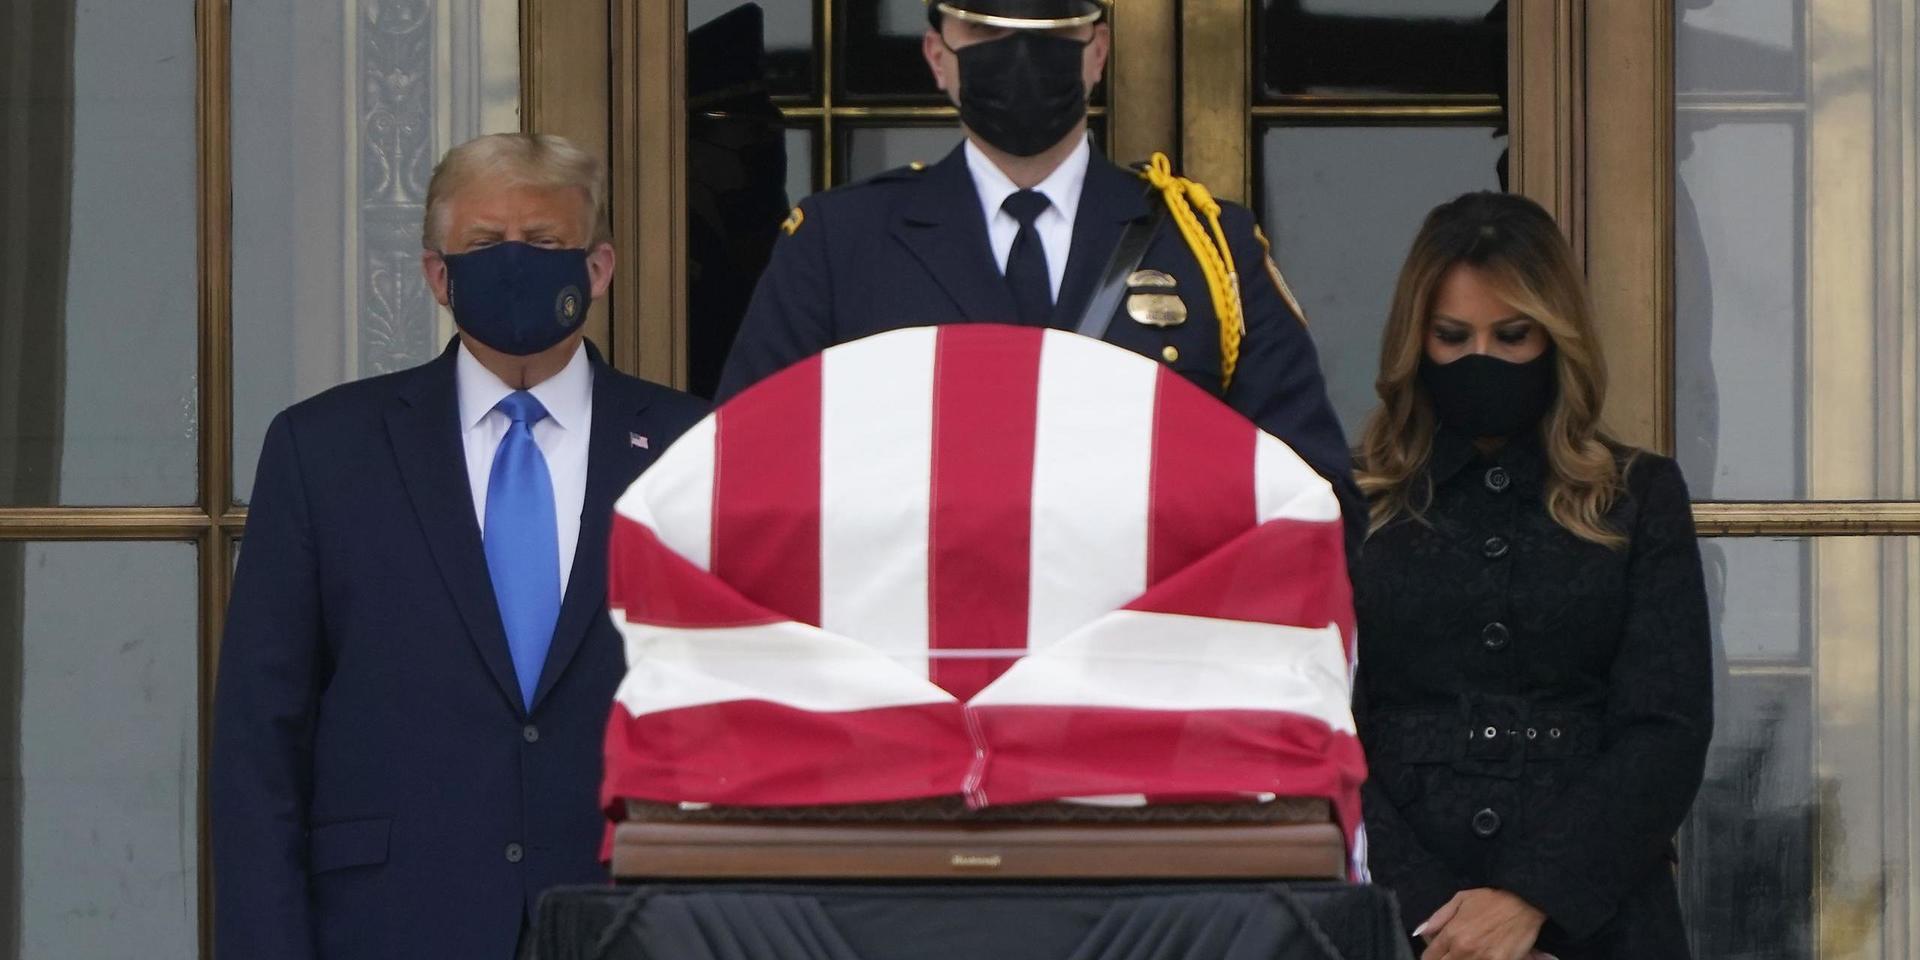 USA:s president Donald Trump och hans hustru Melania Trump kom på torsdagen till Högsta domstolen för att kondolera Ruth Bader Ginsburg, HD-domaren som avled i fredags, 87 år gammal.